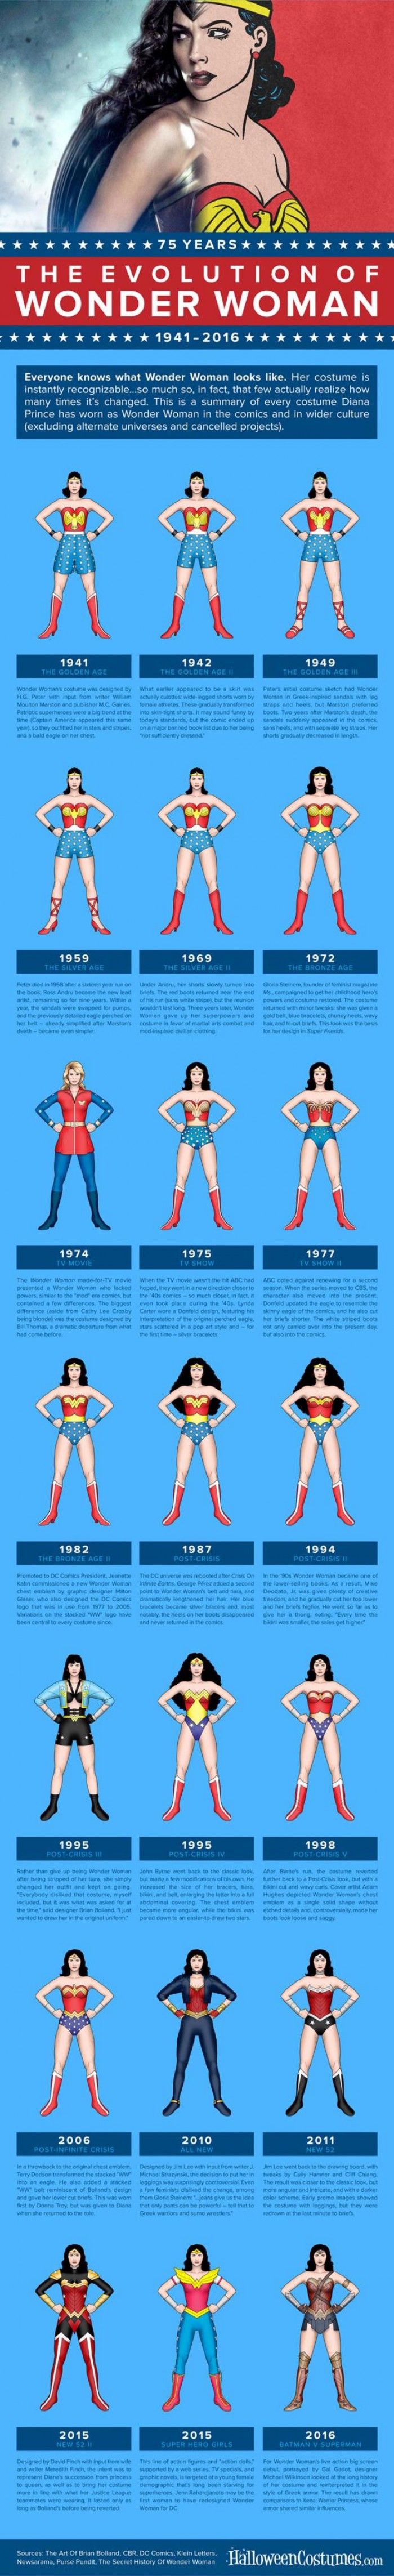 Evolusi kostum Wonder Woman selama 75 tahun, mana yang paling seksi?